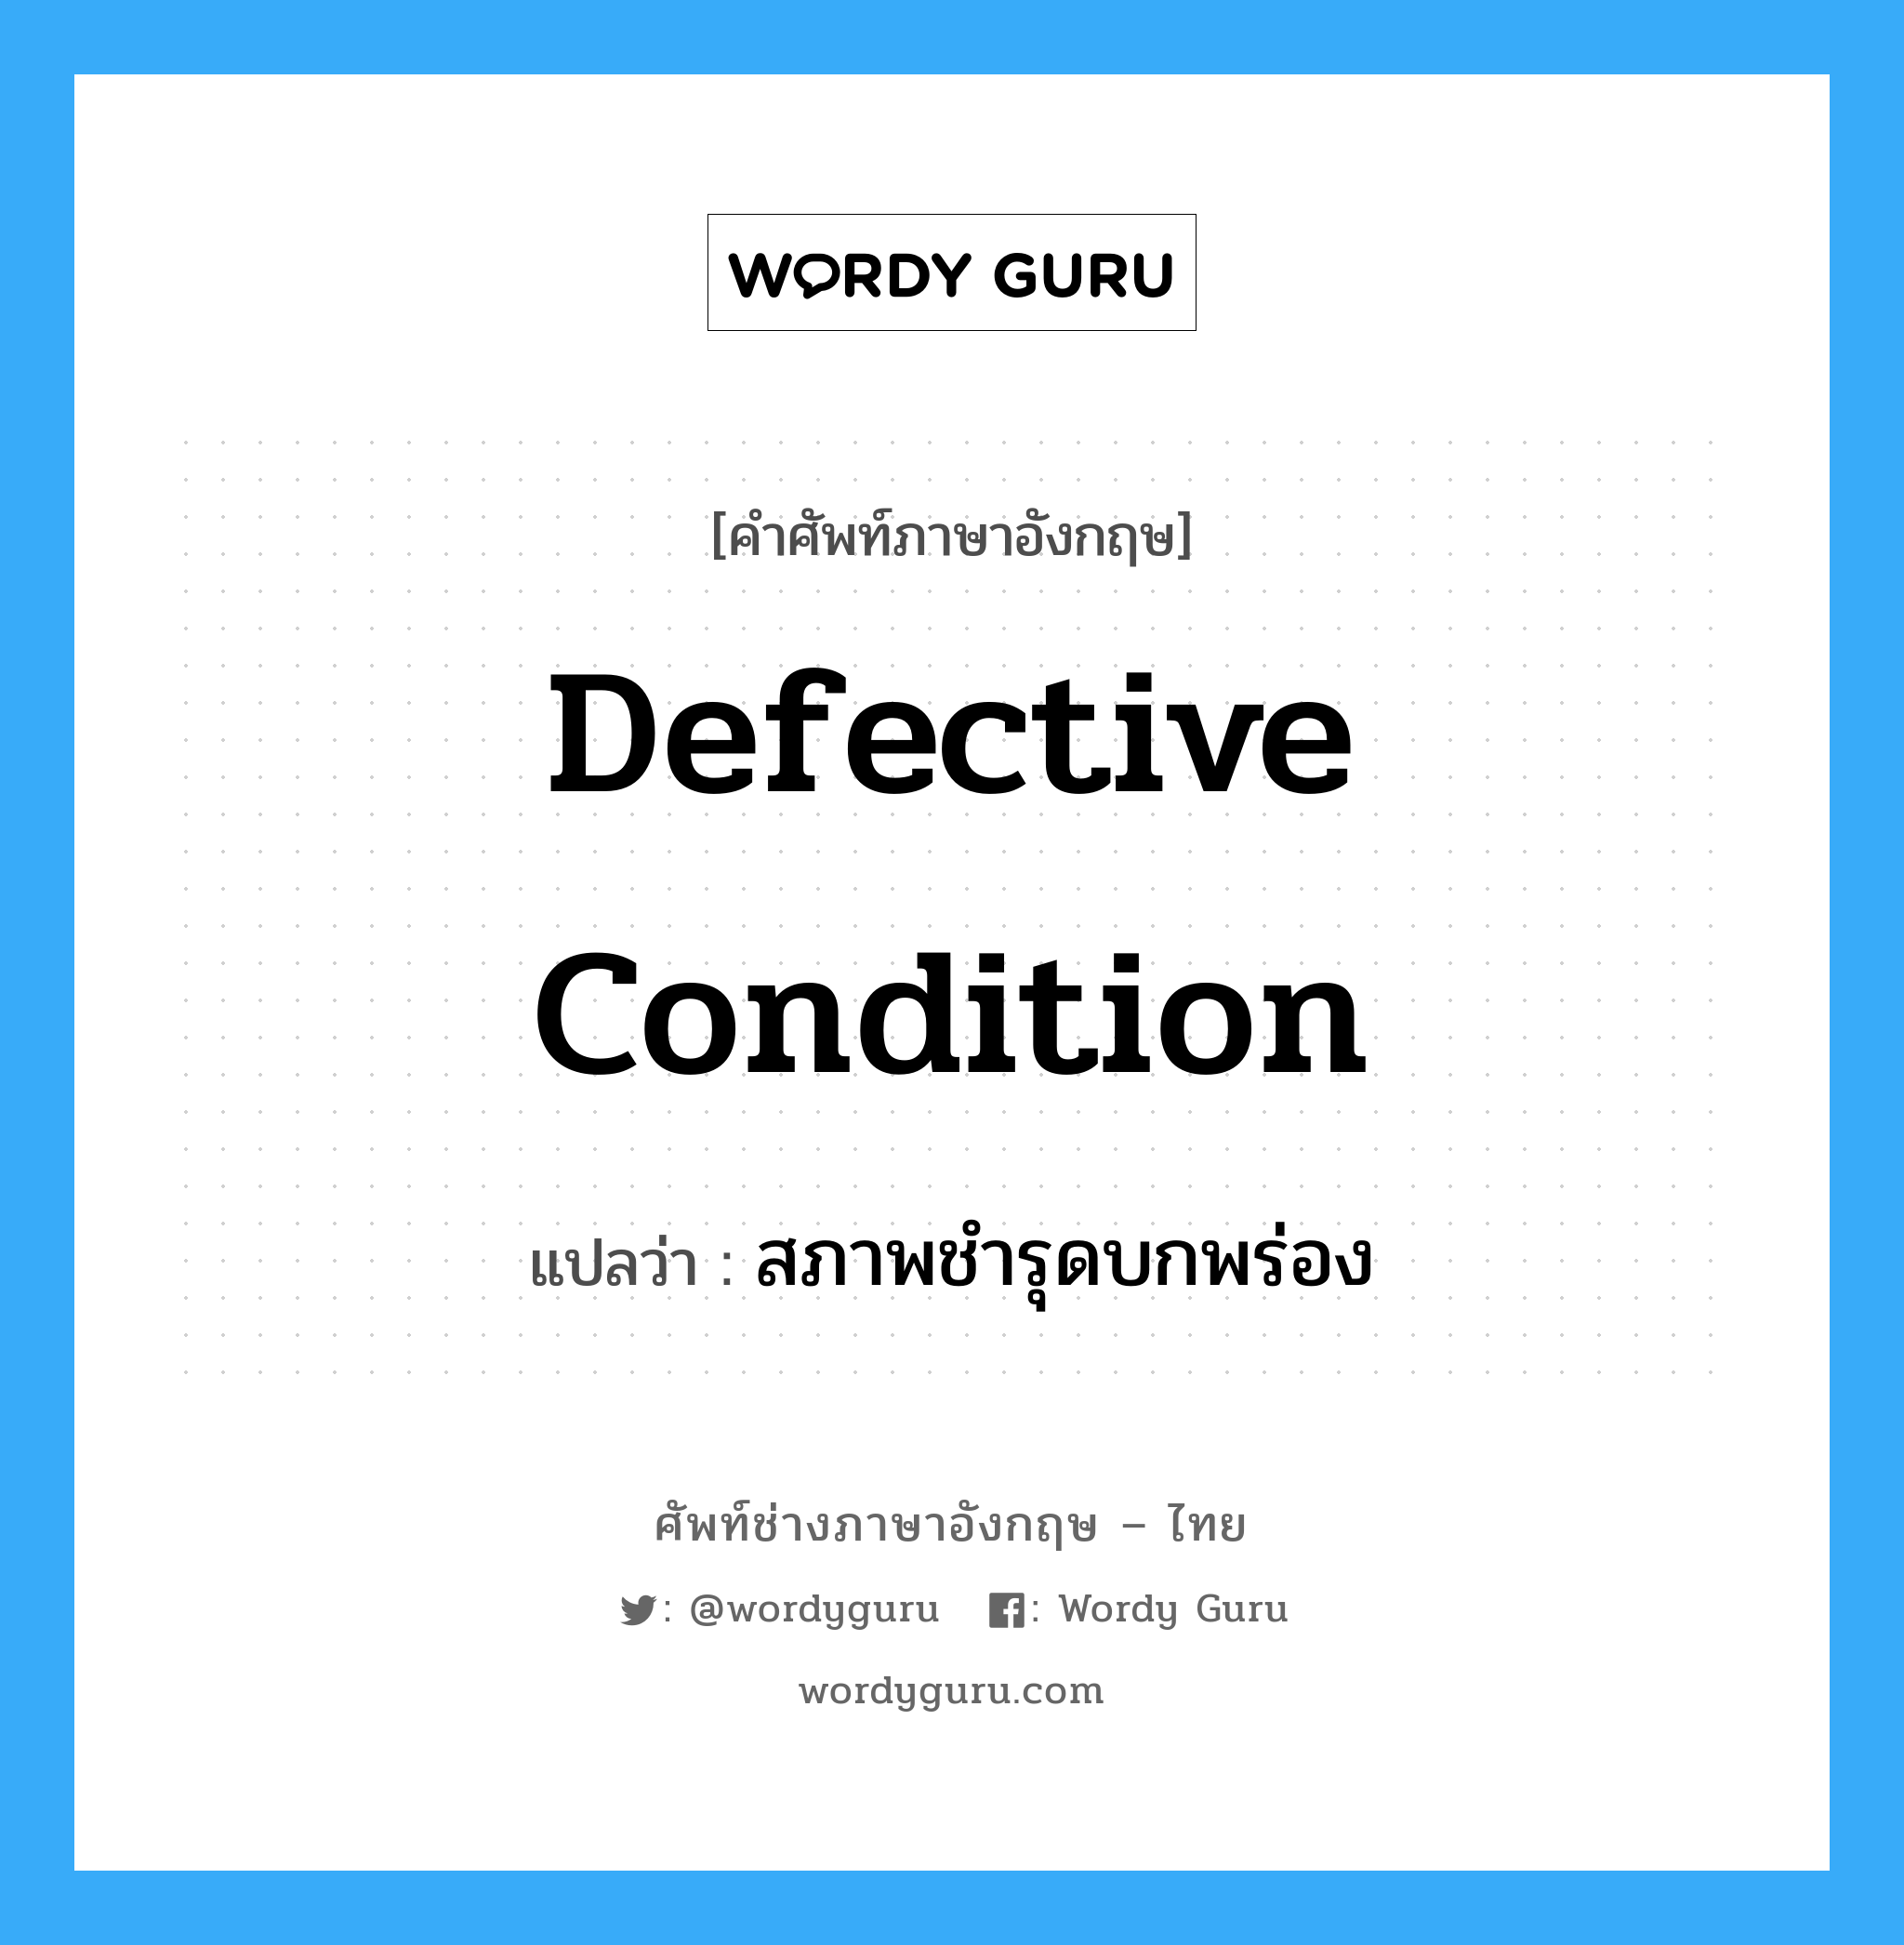 Defective condition แปลว่า?, คำศัพท์ช่างภาษาอังกฤษ - ไทย Defective condition คำศัพท์ภาษาอังกฤษ Defective condition แปลว่า สภาพชำรุดบกพร่อง